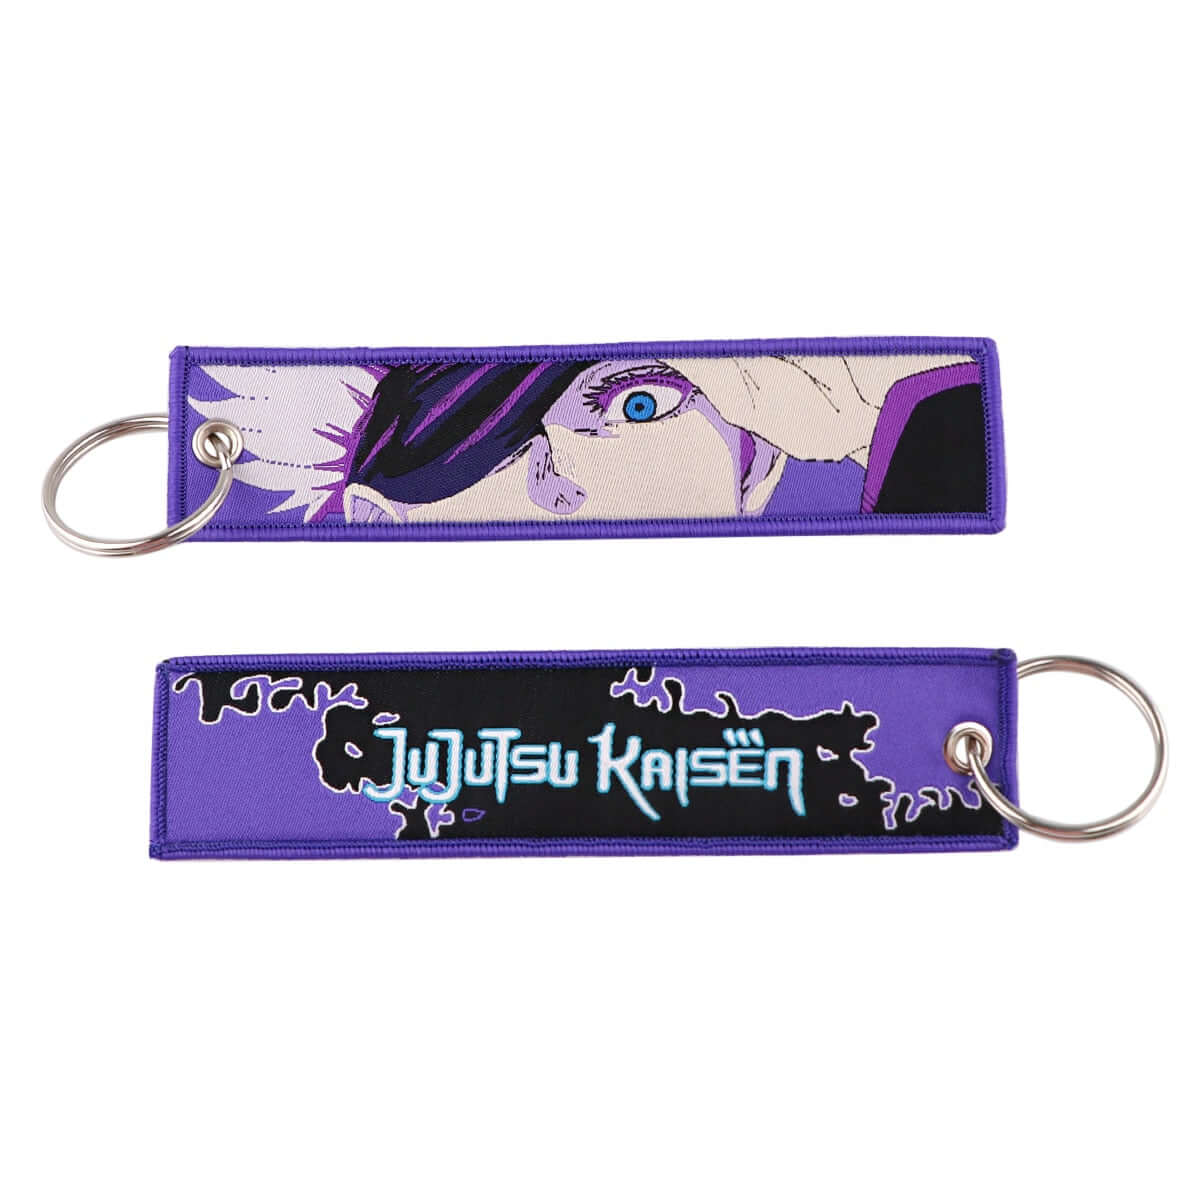 Coole Anime Schlüsselanhänger / 100 Varianten / Beidseitig bestickt - NerdyGeekStore